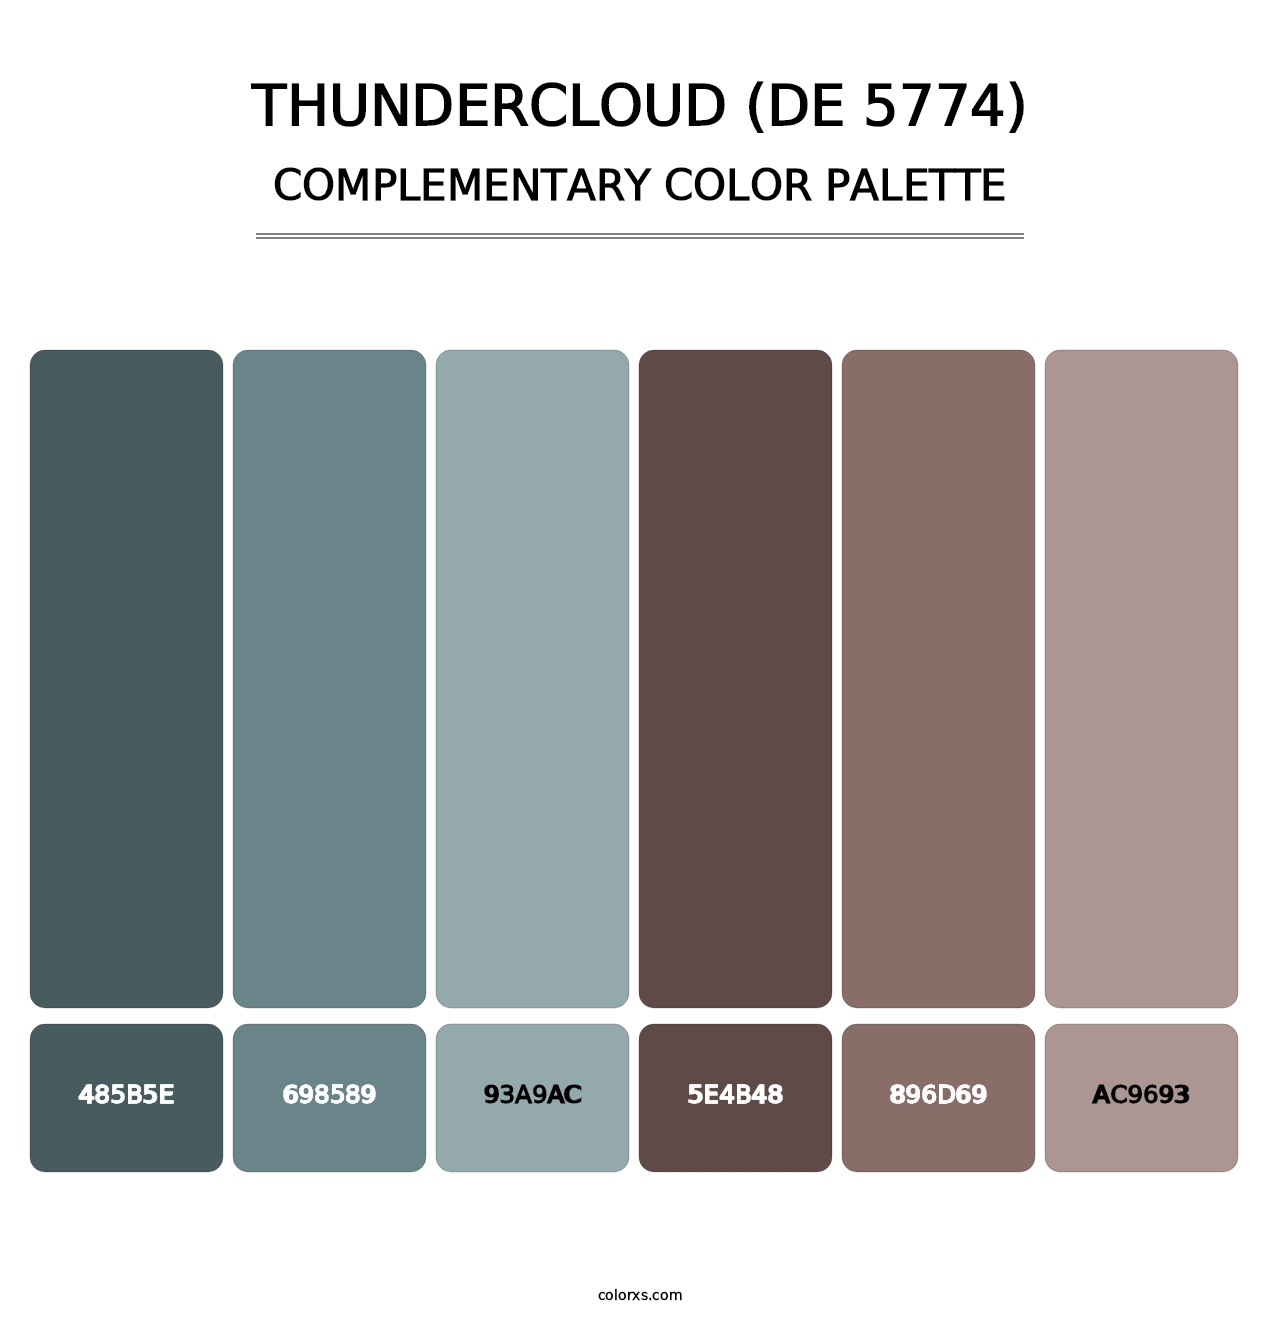 Thundercloud (DE 5774) - Complementary Color Palette